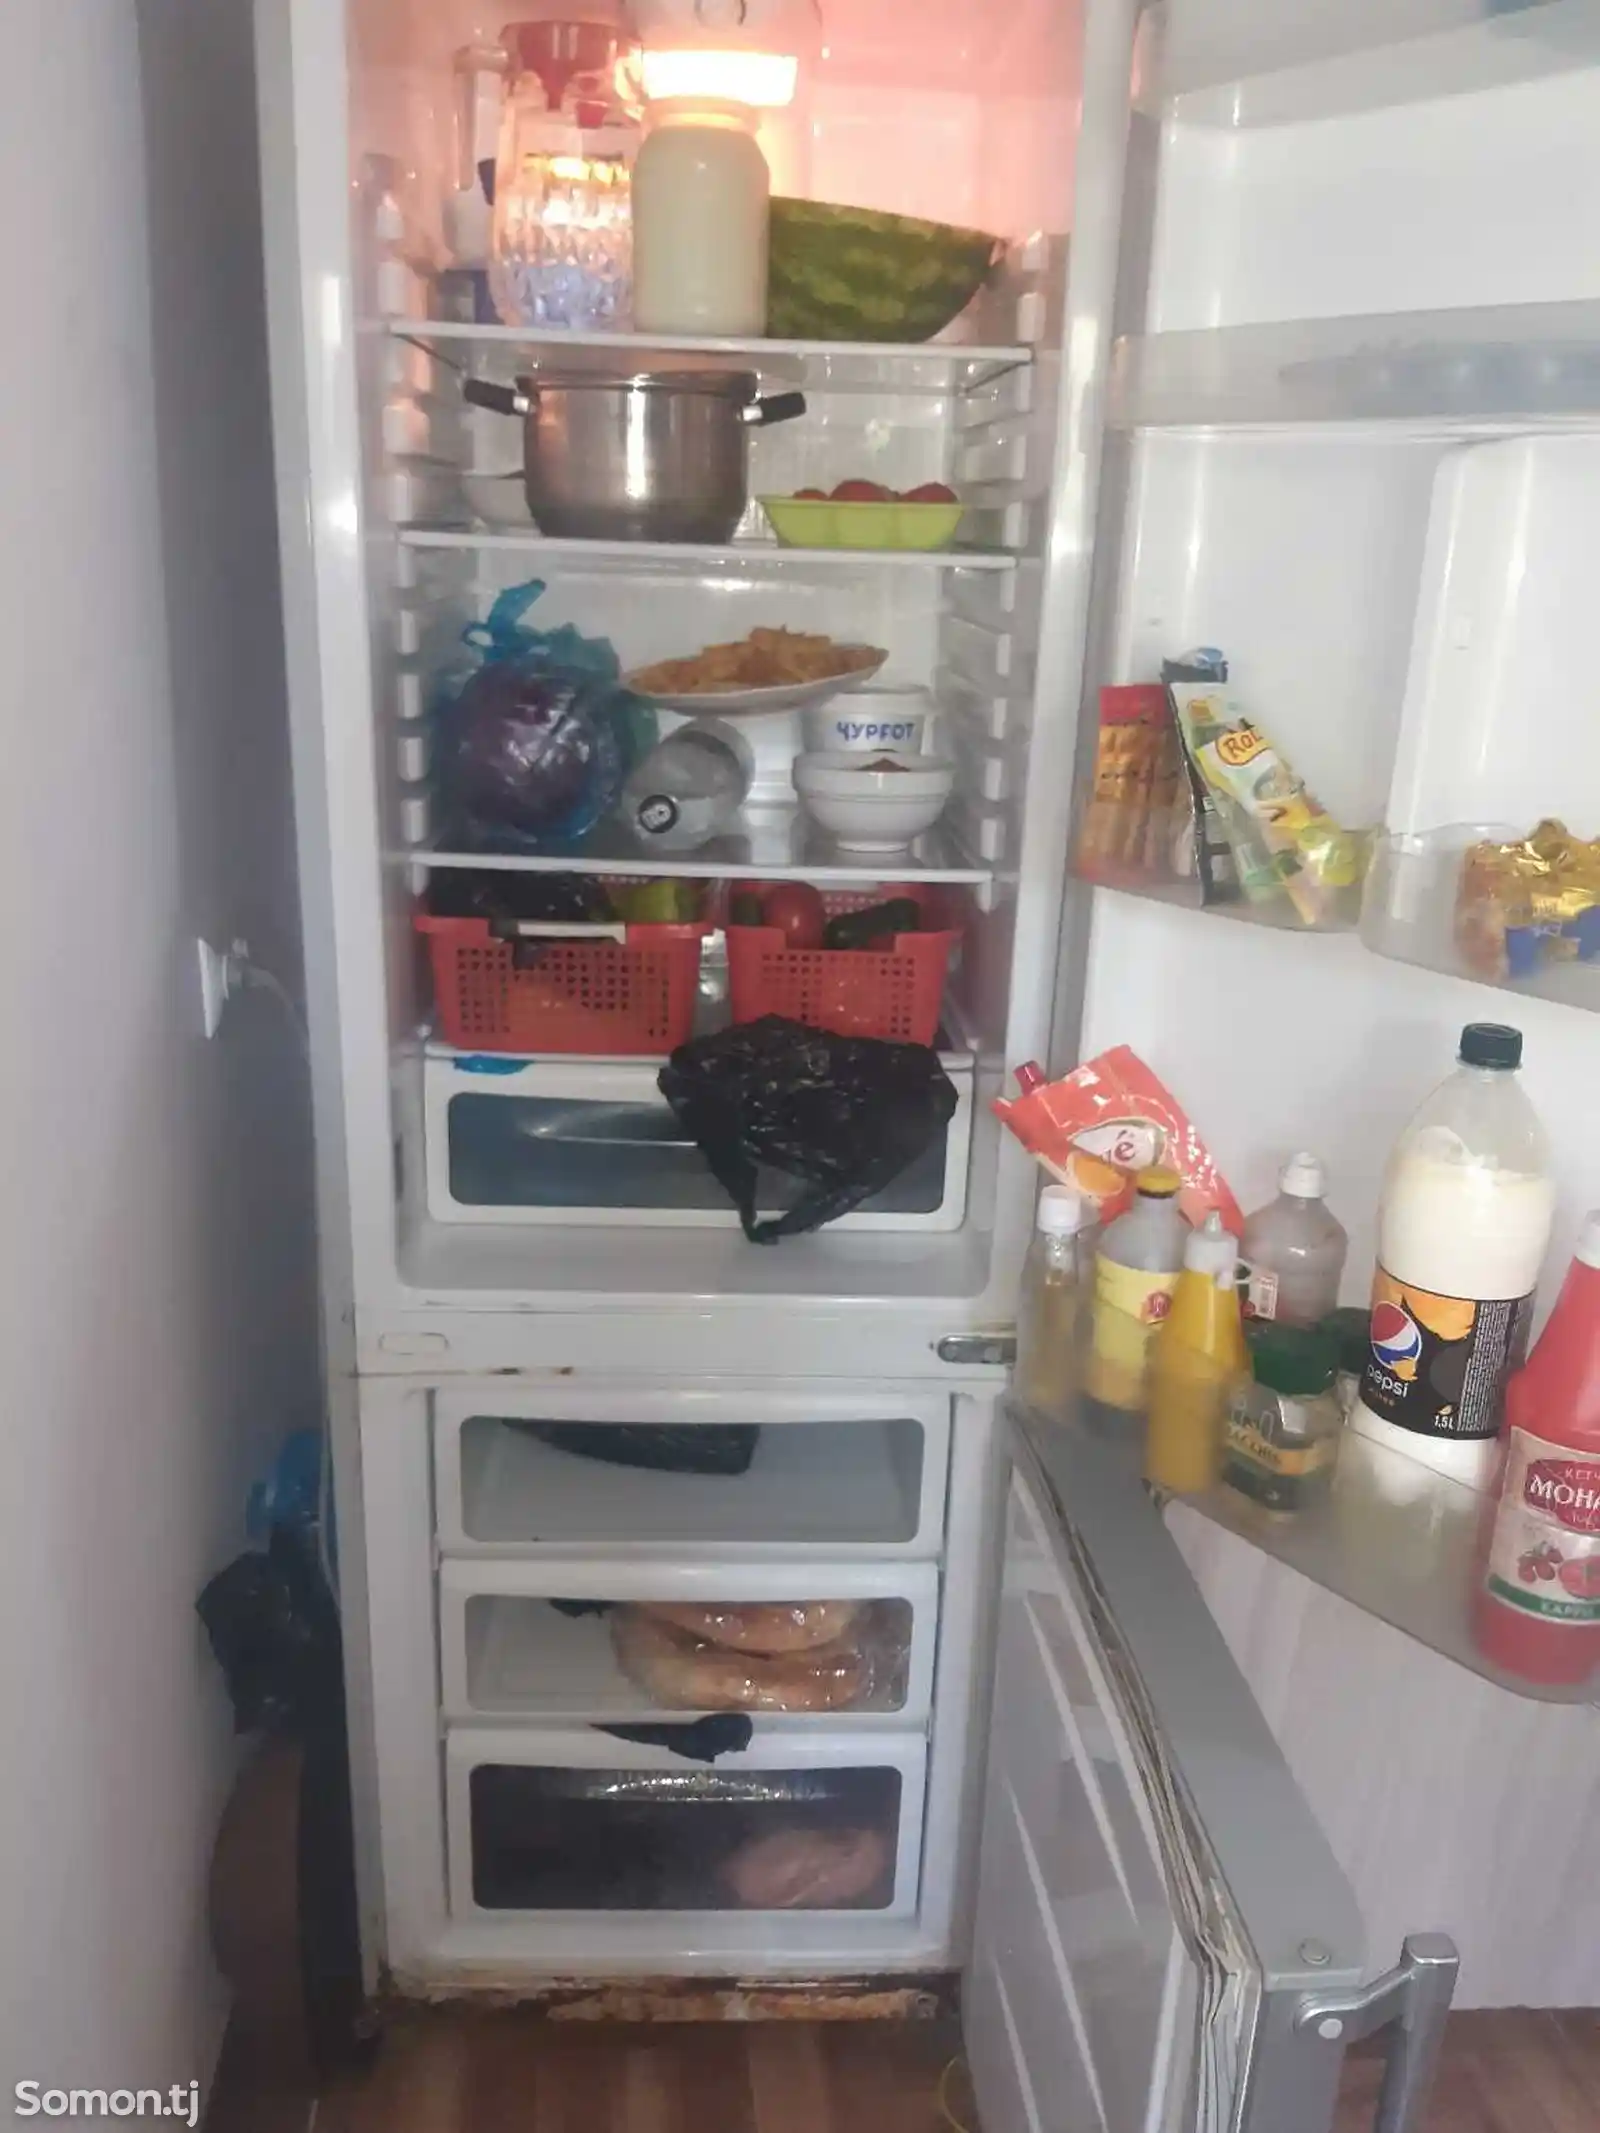 Холодильник LG-2